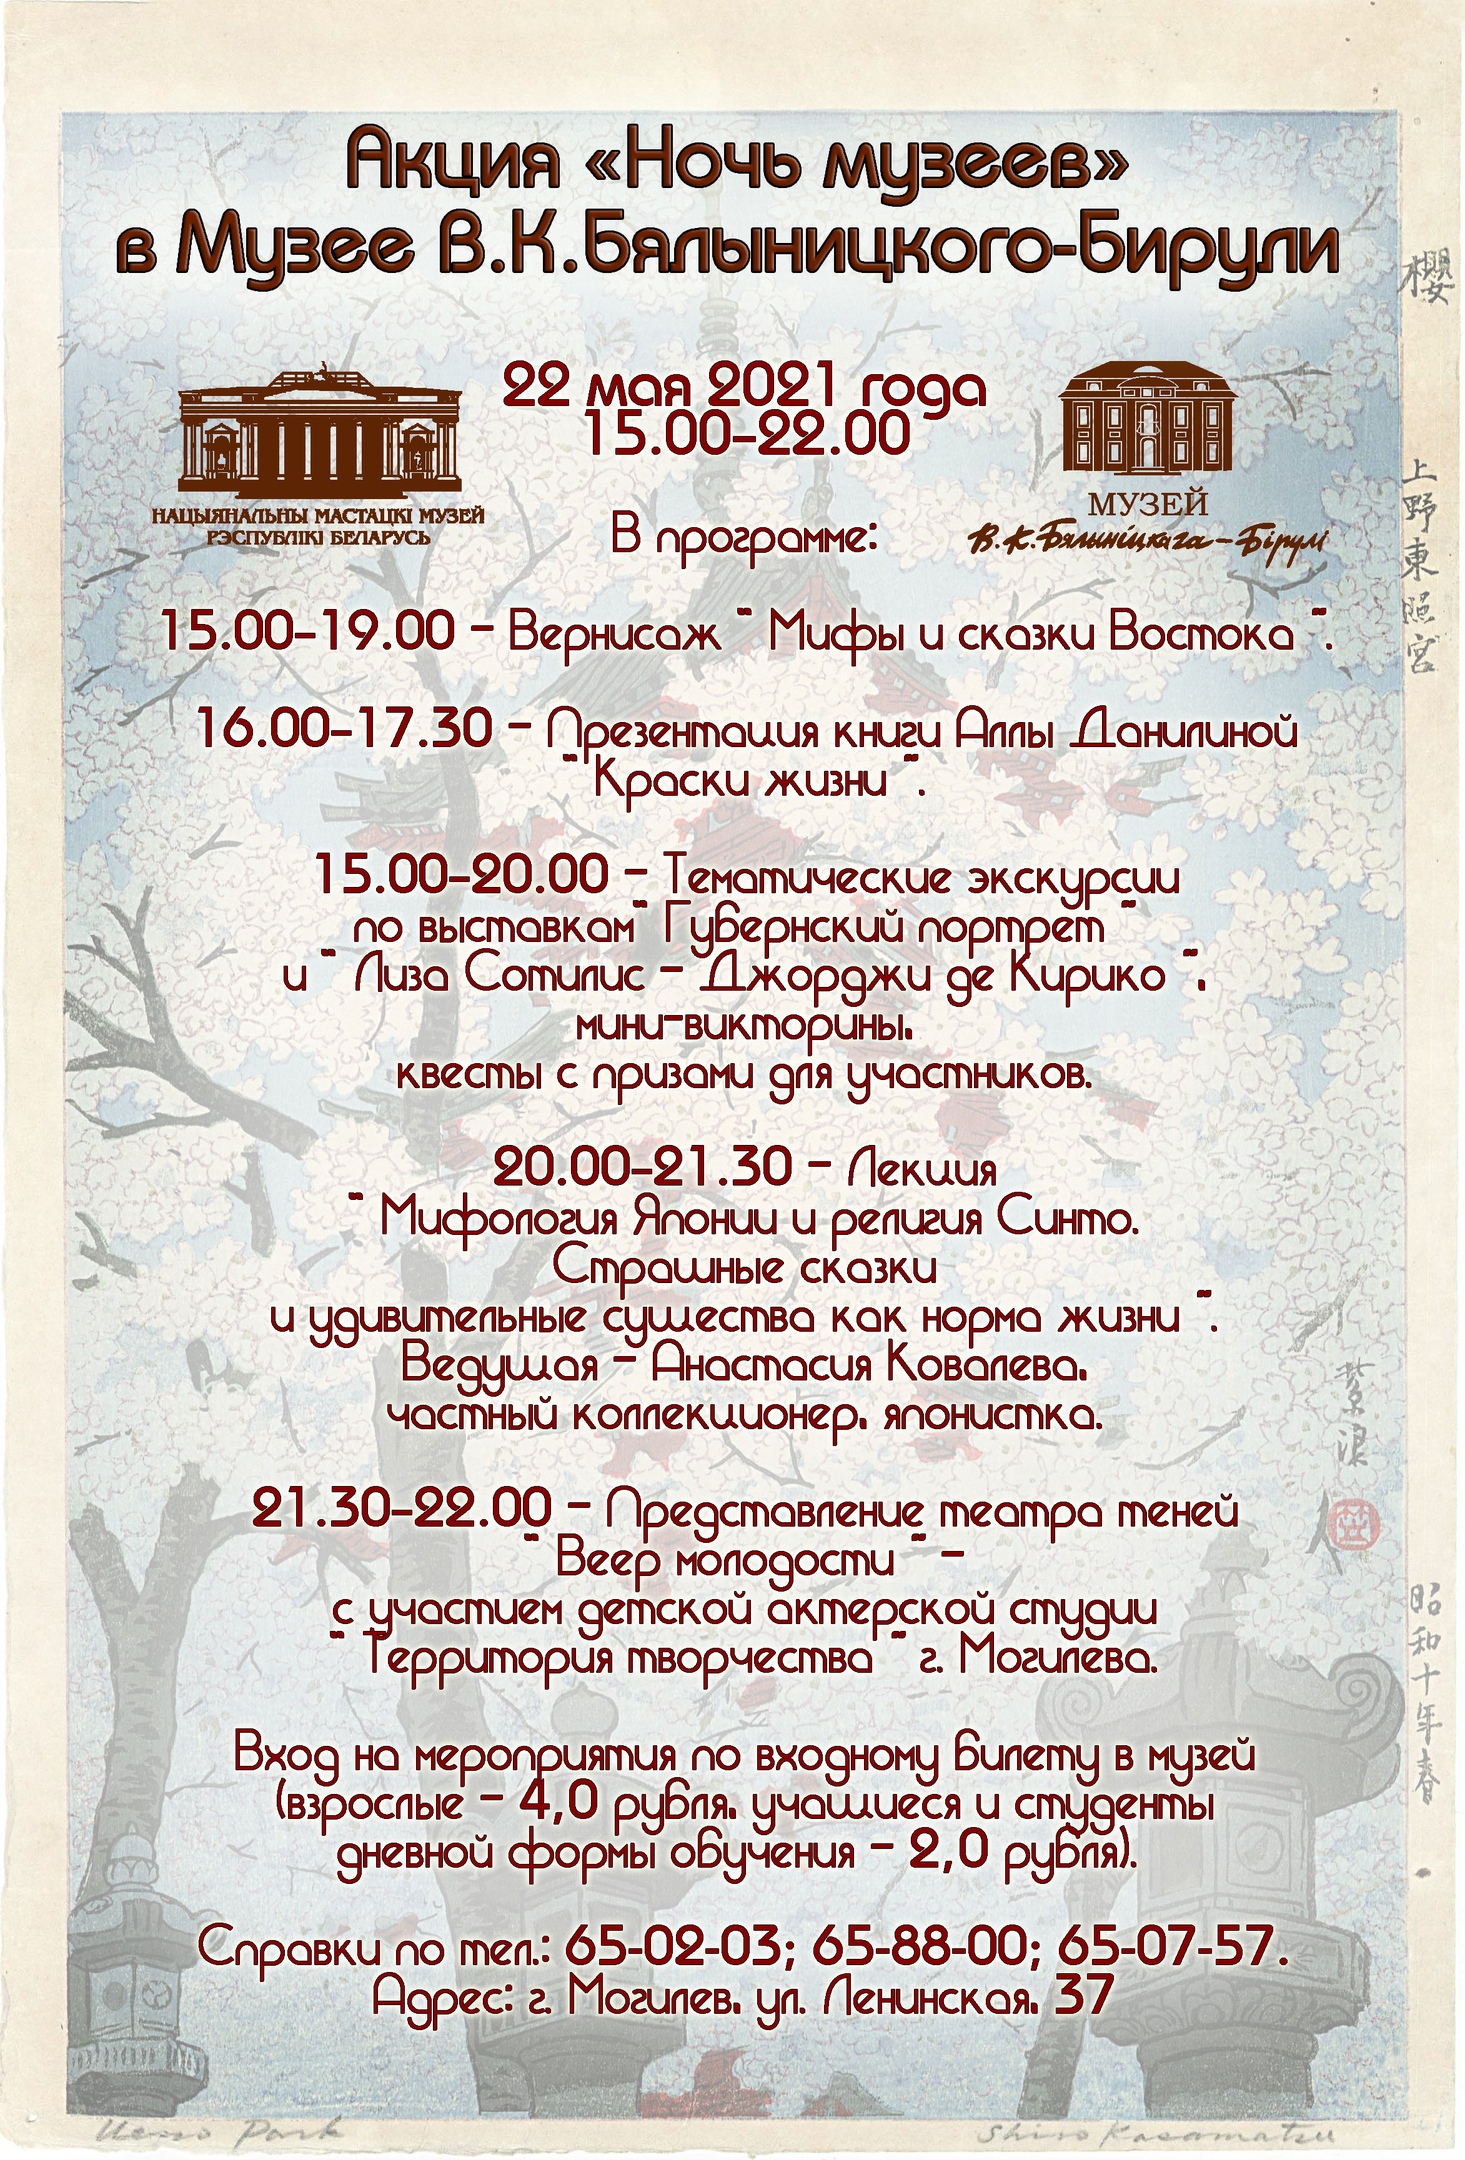 Акция «Ночь музеев» пройдет в музее В.К. Бялыницкого-Бирули Могилева 22 мая